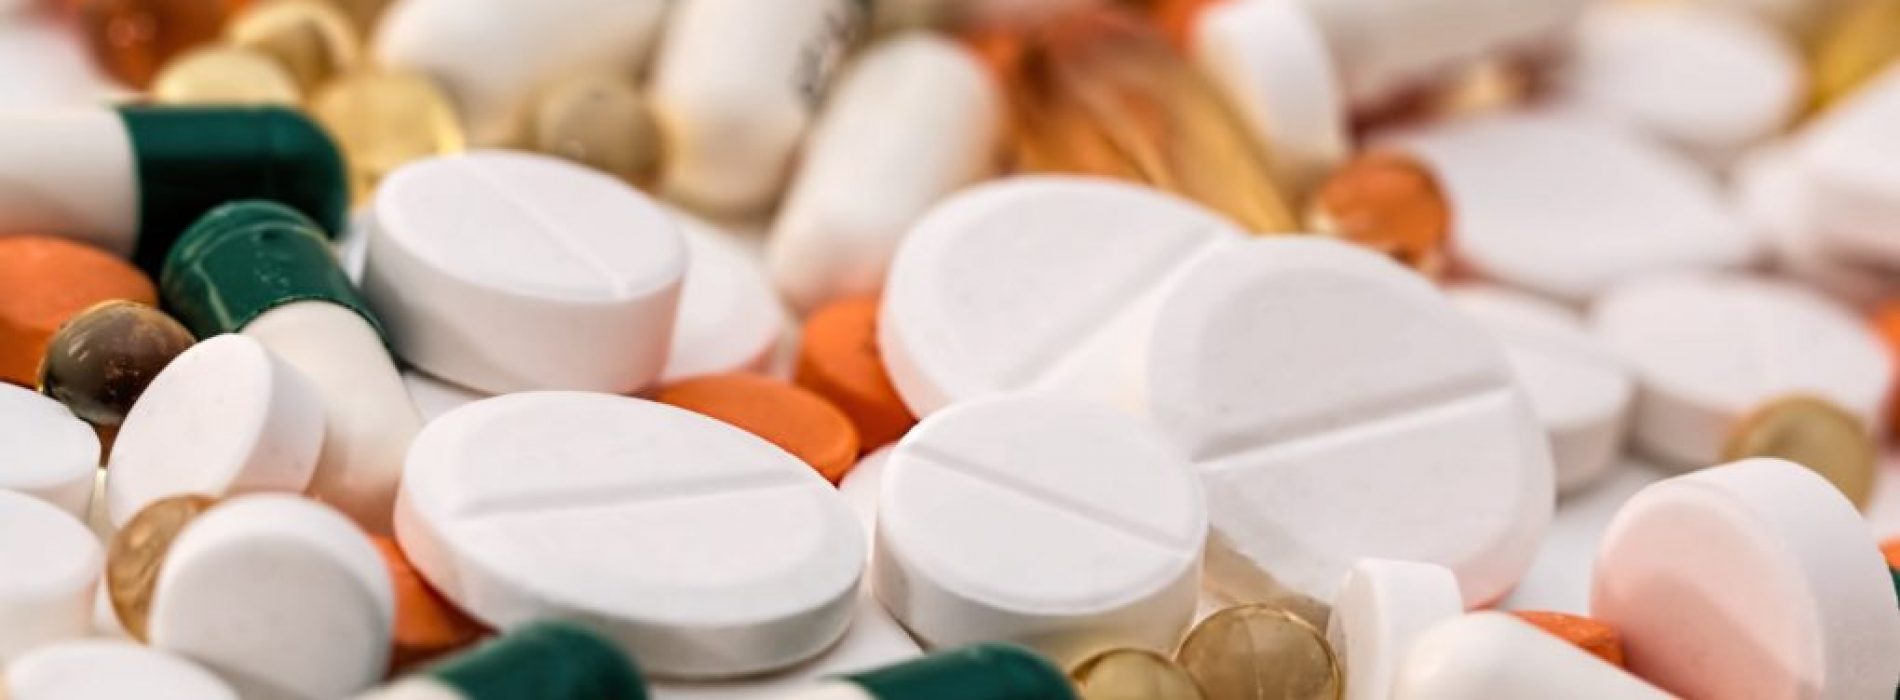 De farmaceutische industrie heeft ons in het nauw gedreven: hoe medicijnen geruisloos uw systeem binnenkomen